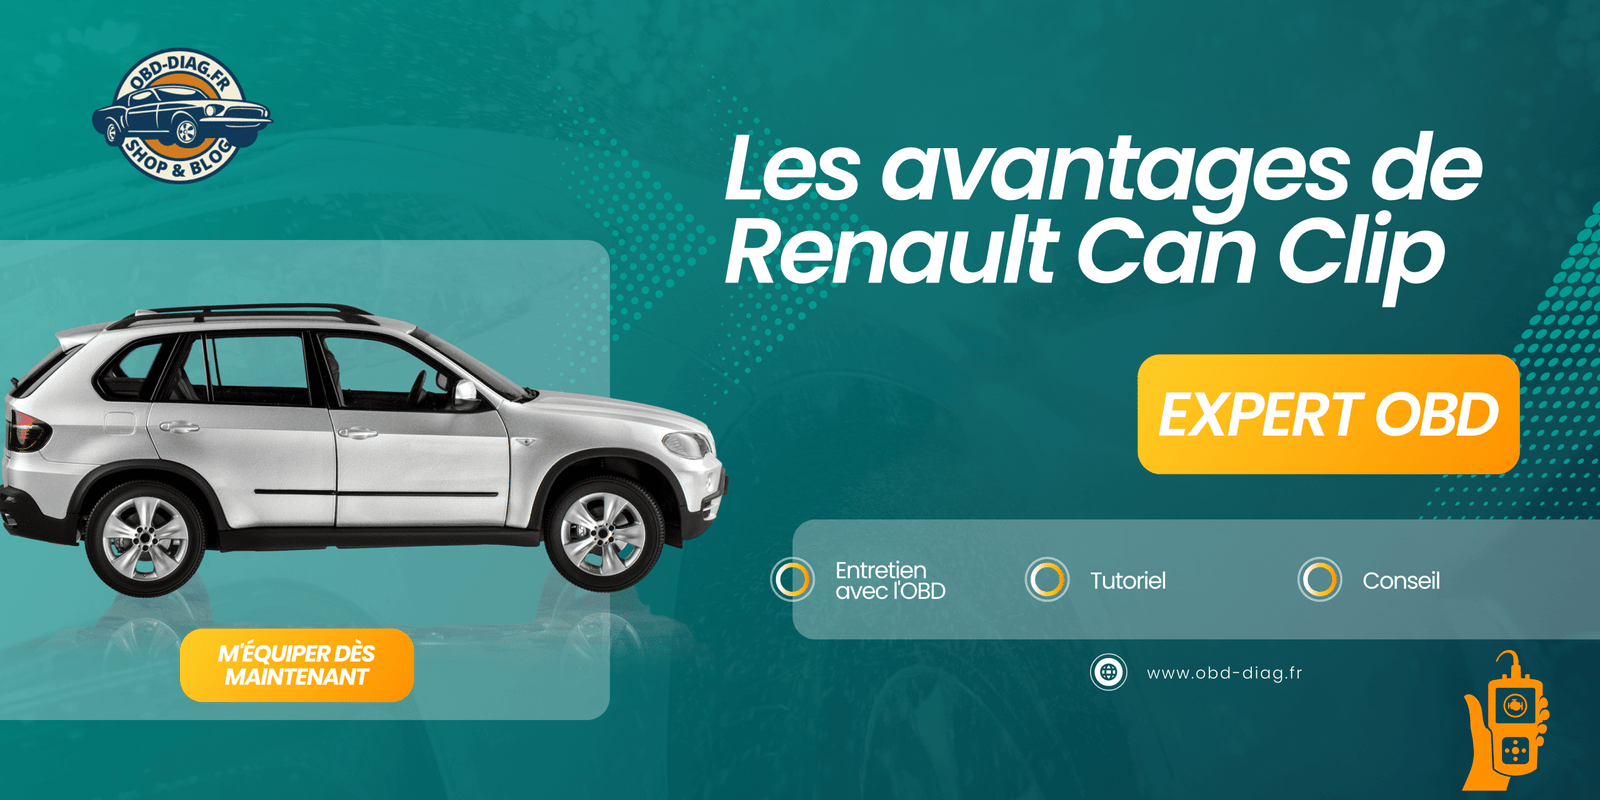 Les avantages de Renault Can Clip